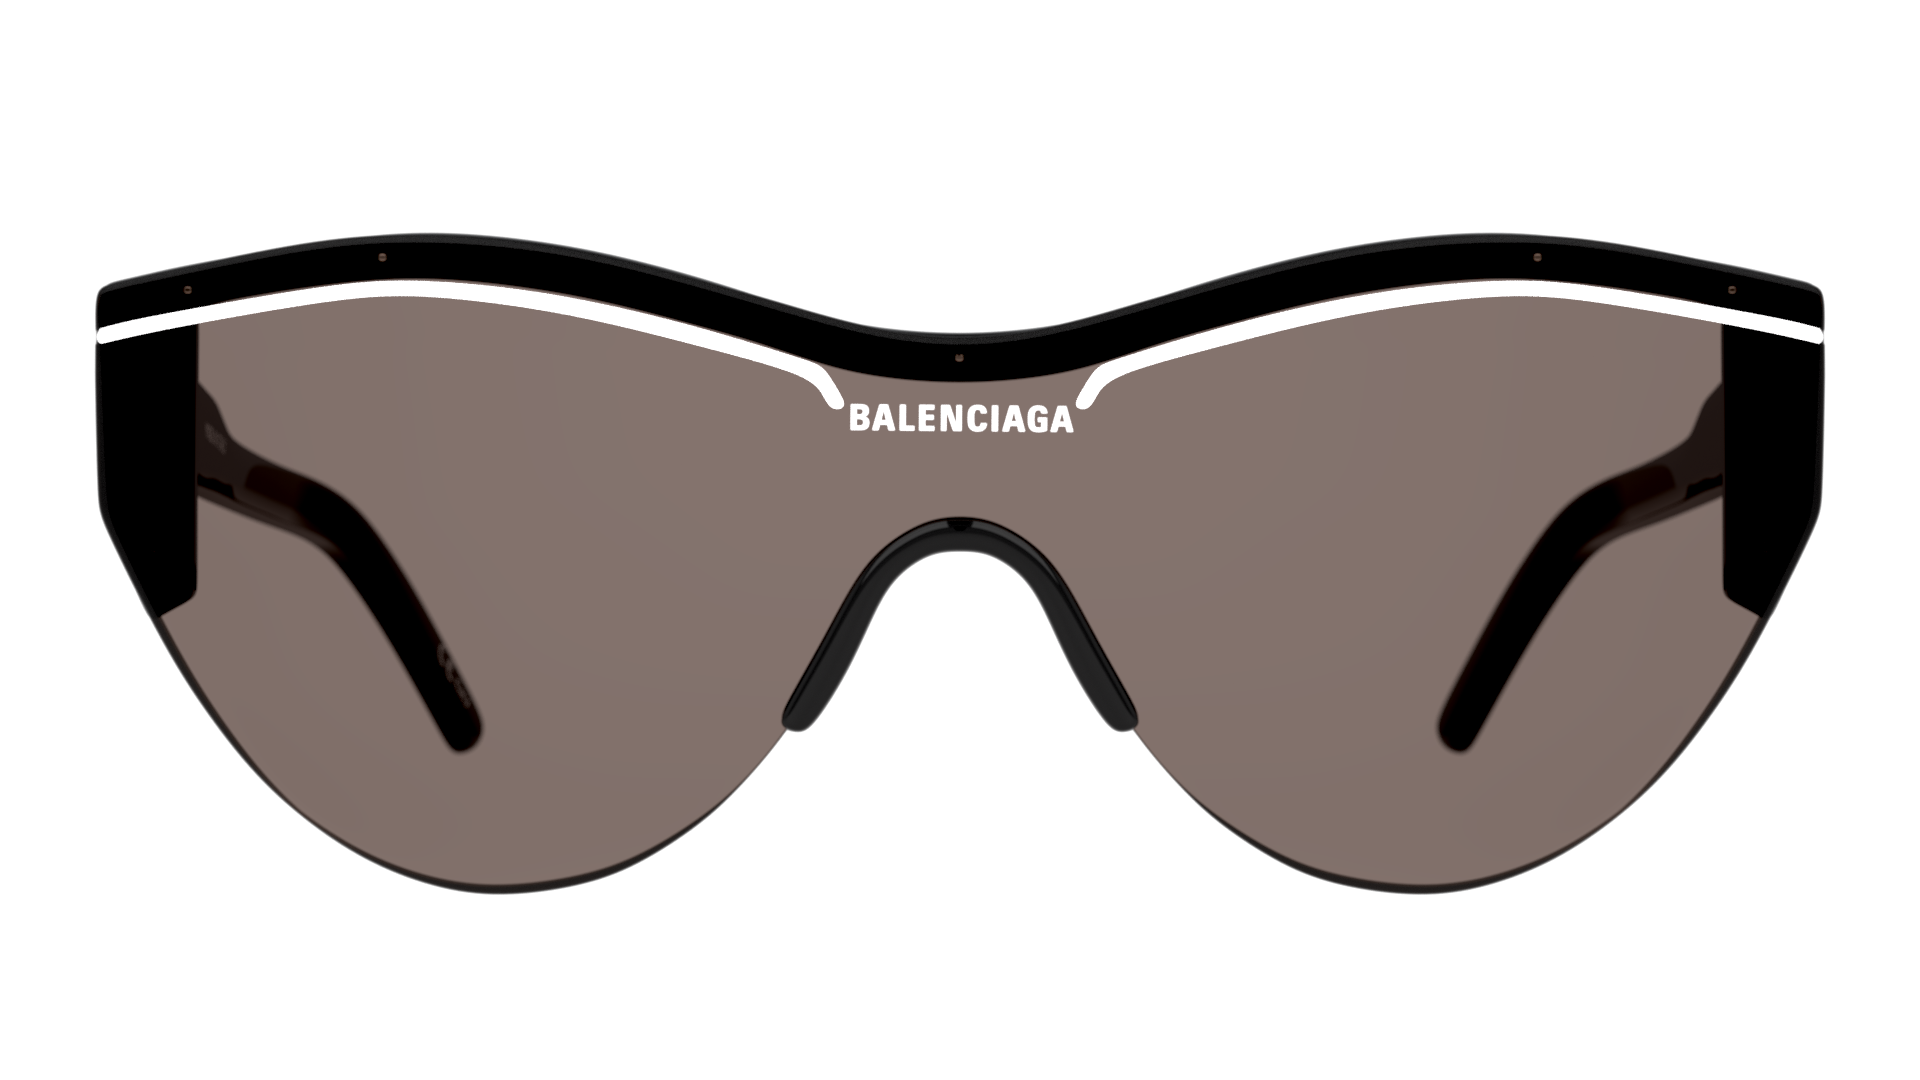 [products.image.front] Balenciaga BB0004S 001